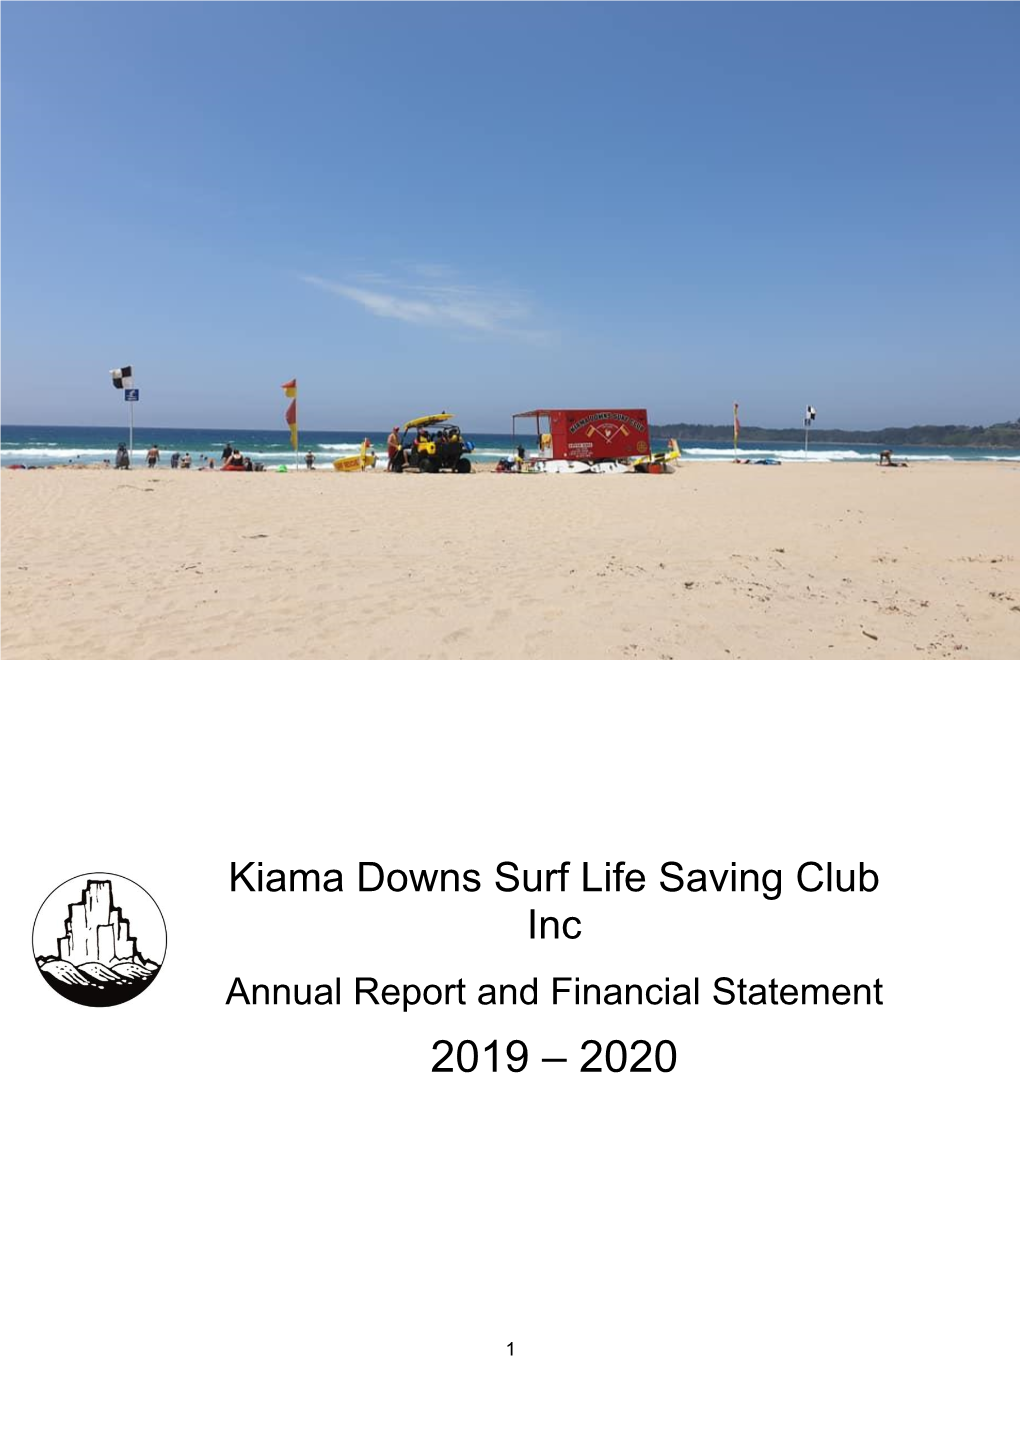 Kiama Downs Surf Life Saving Club Inc